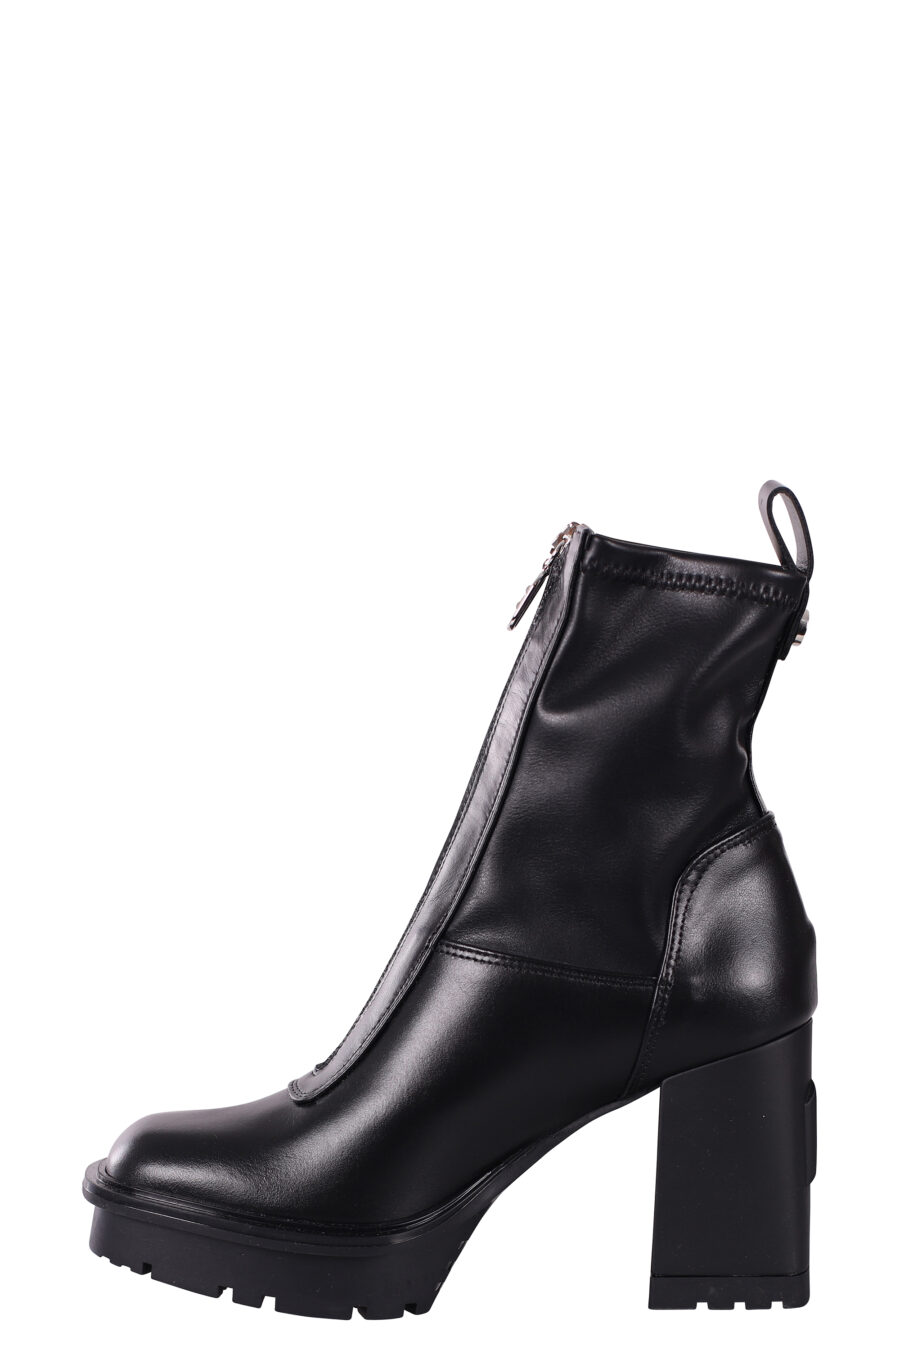 Botines negros estilo calcetin con tacon y plataforma - IMG 5813